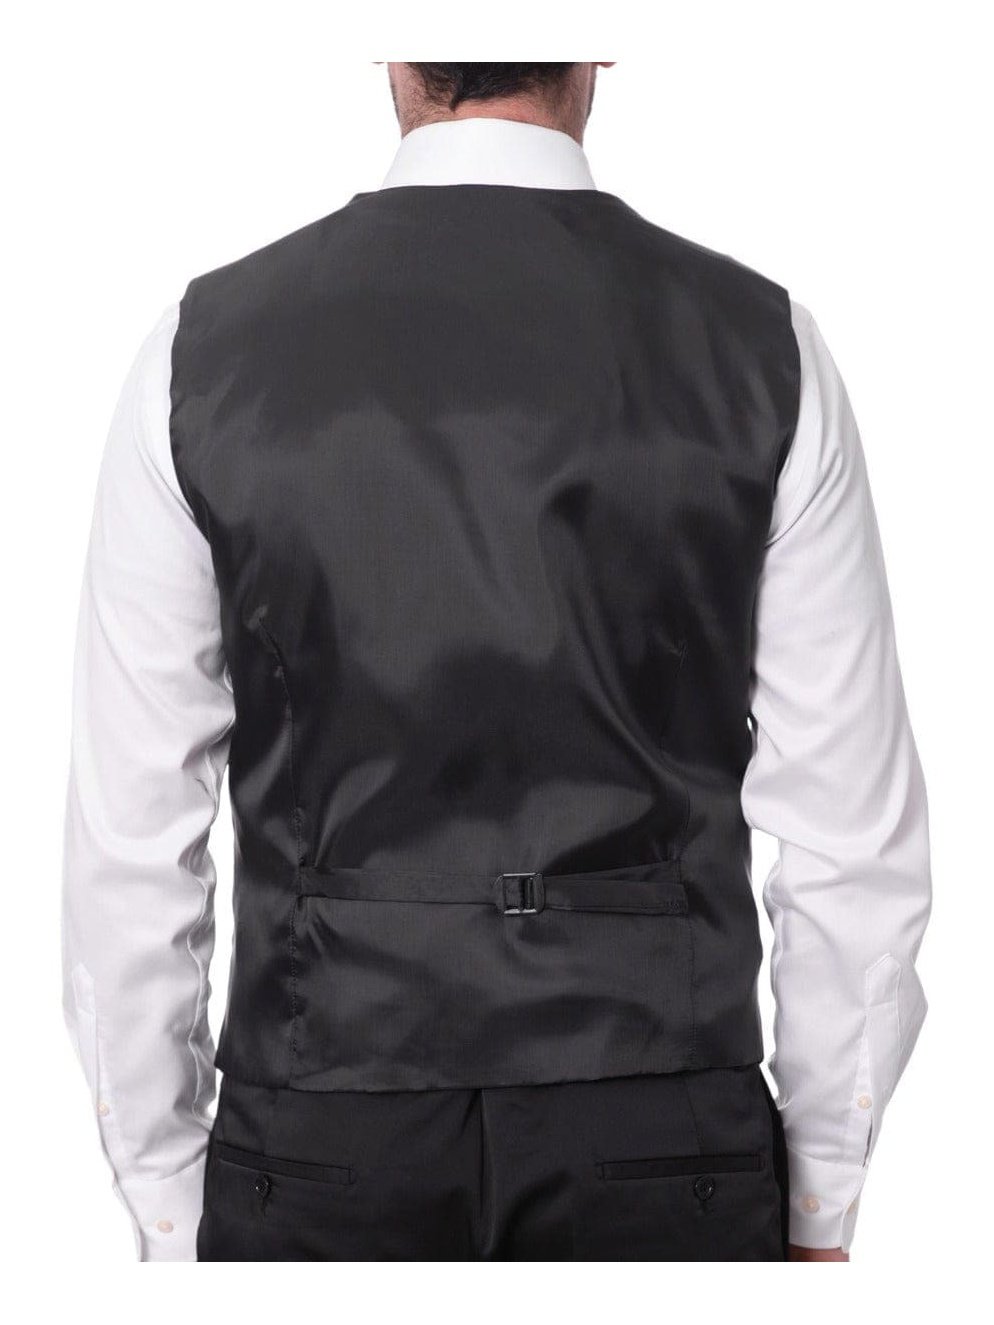 Cemden THREE PIECE SUITS Cemden Mens Solid Black Slim Fit One Button Three Piece Tuxedo Suit